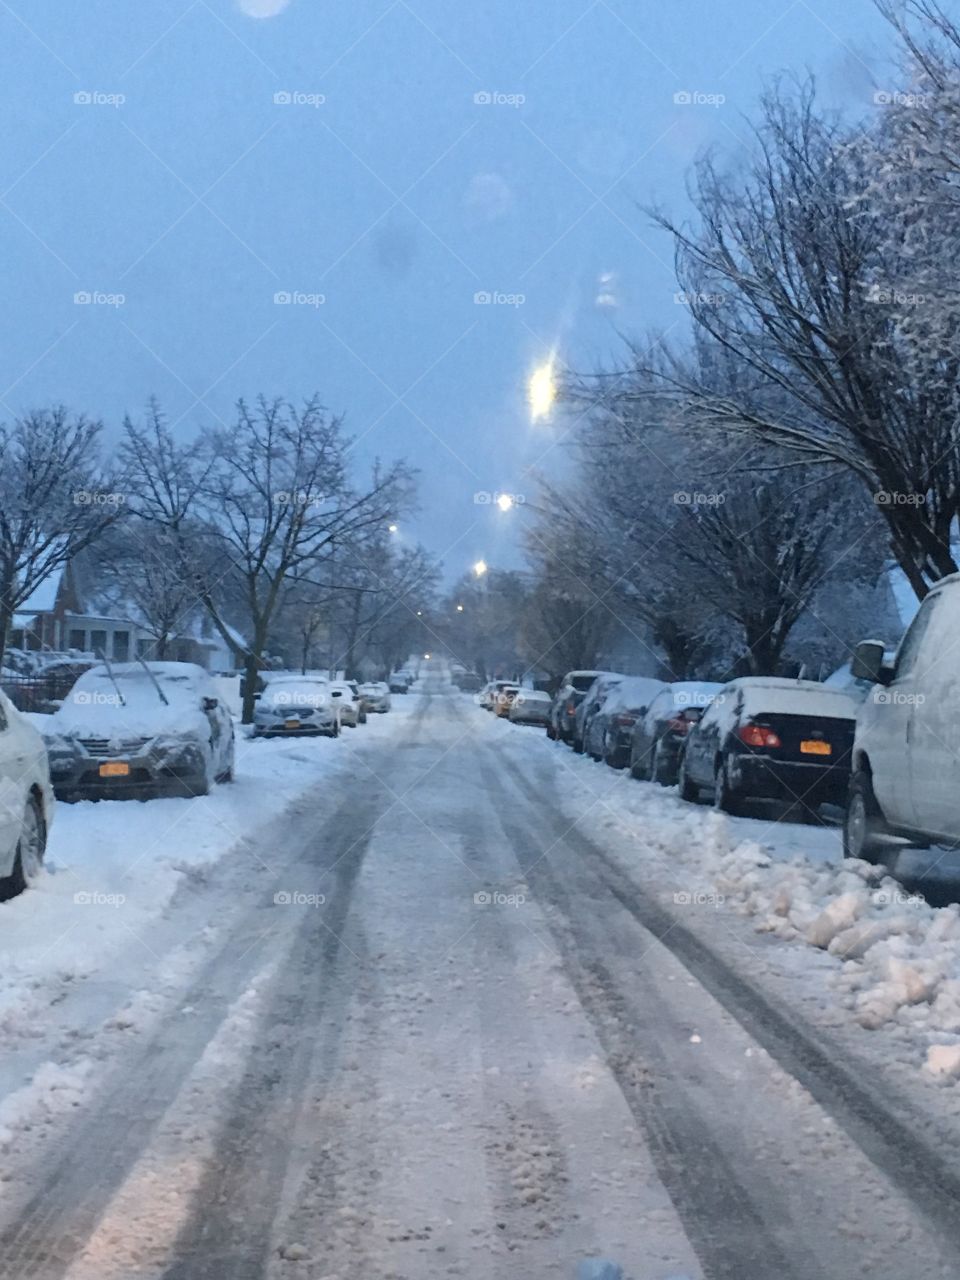 Snowy sad street 